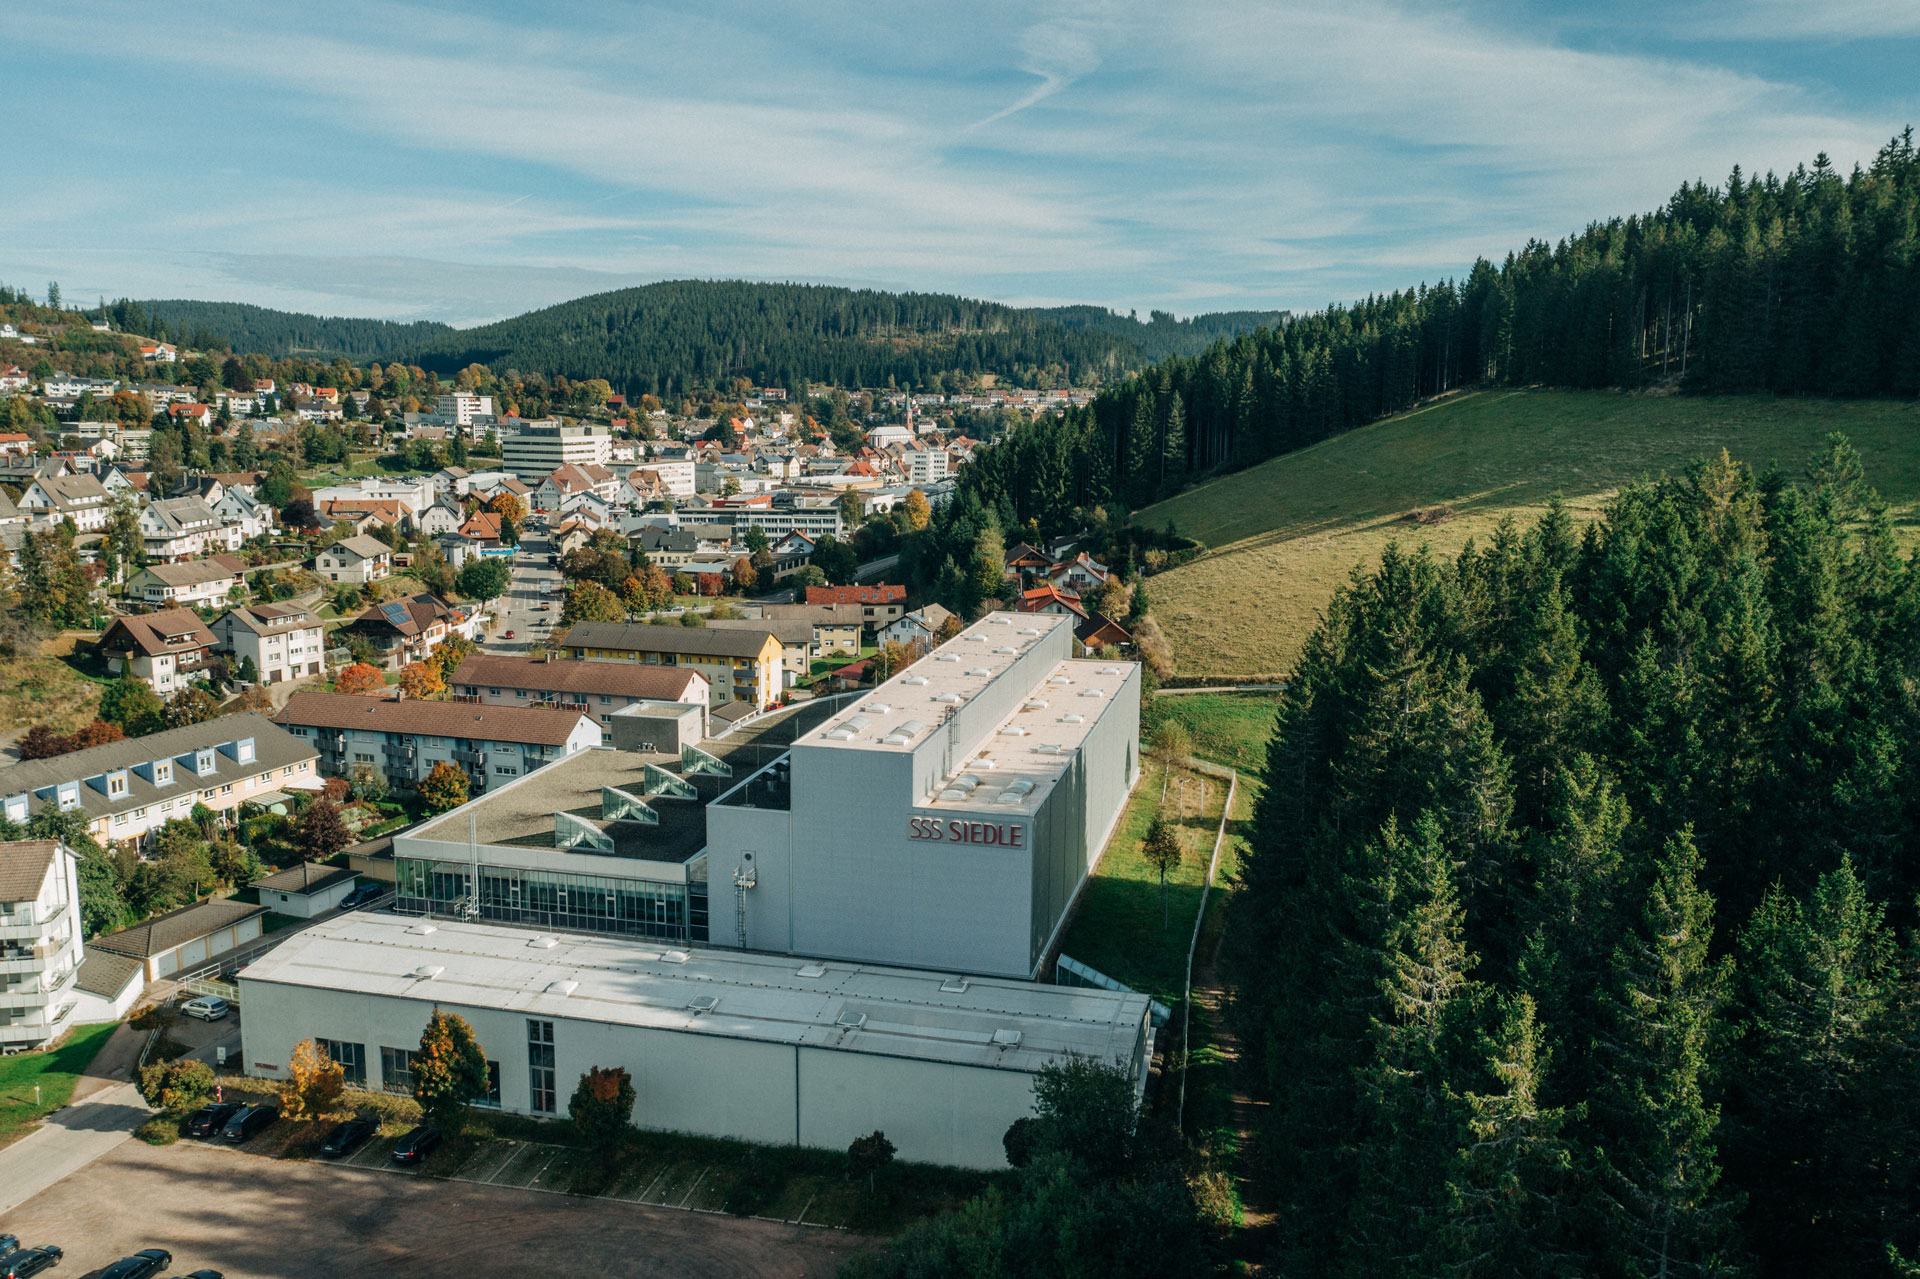 Das Siedle Logistikzentrum in Furtwangen aus Vogelperspektive